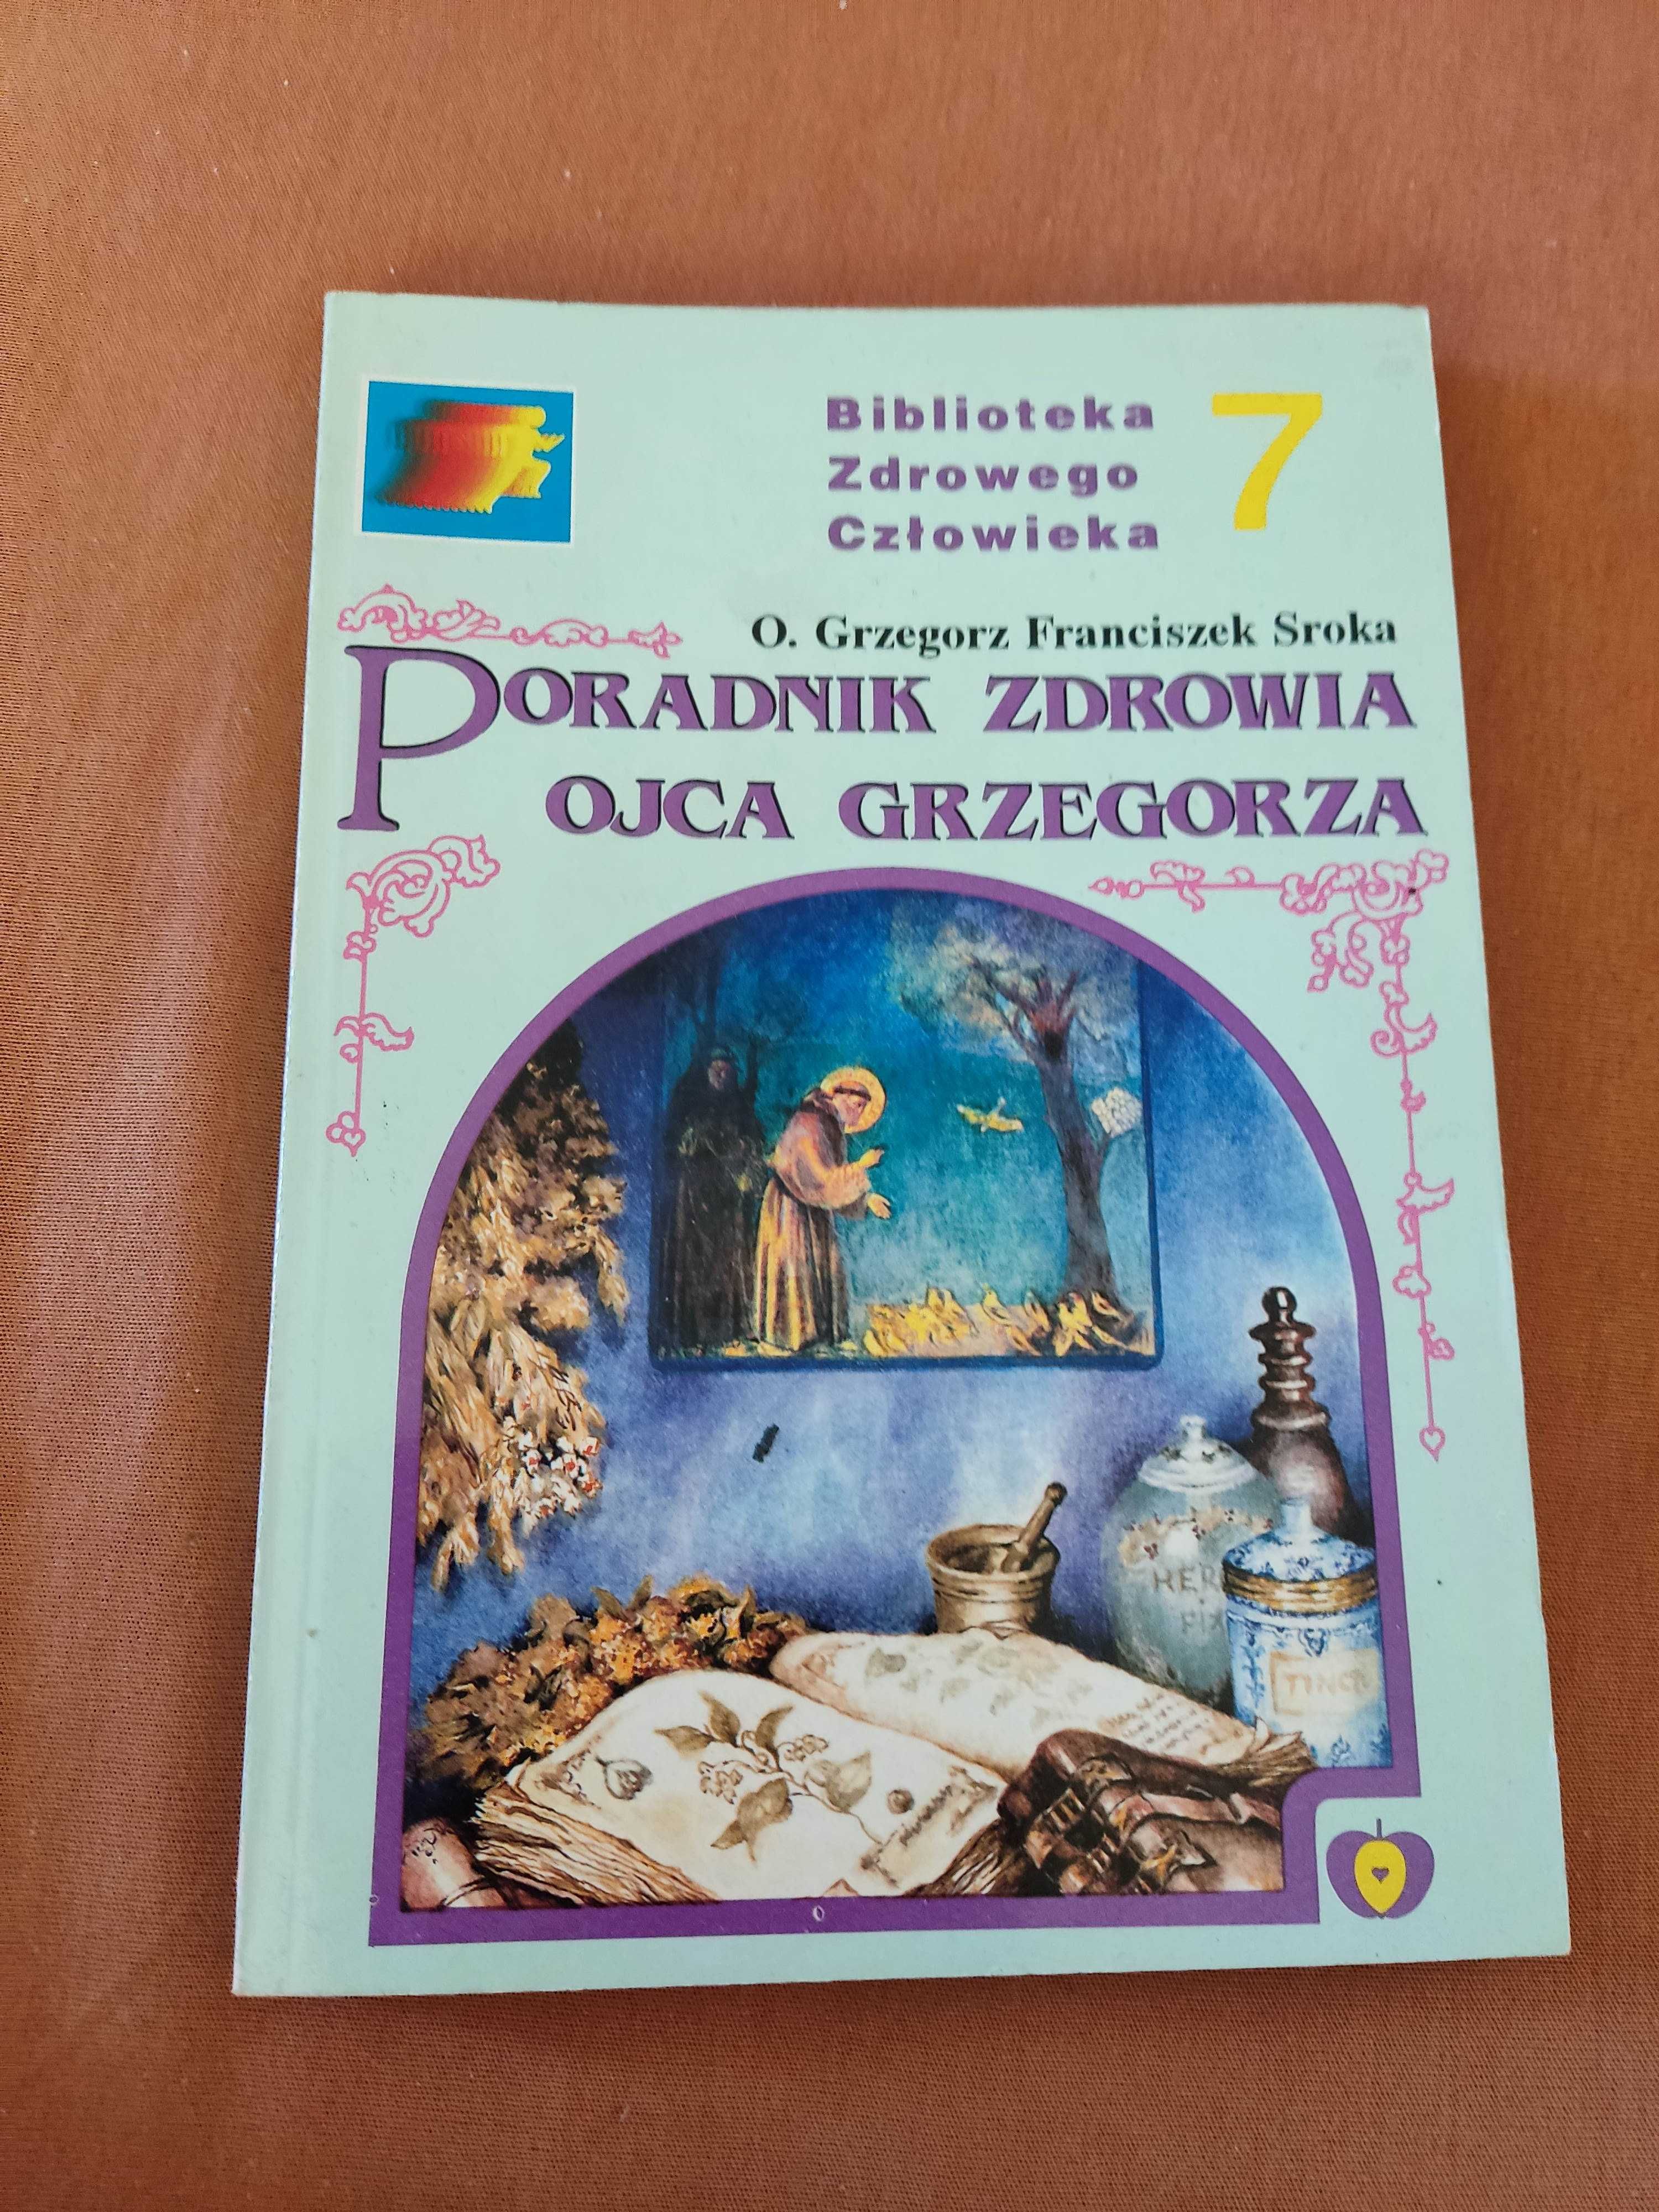 Książka,, Poradnik zdrowia ojca Grzegorza"